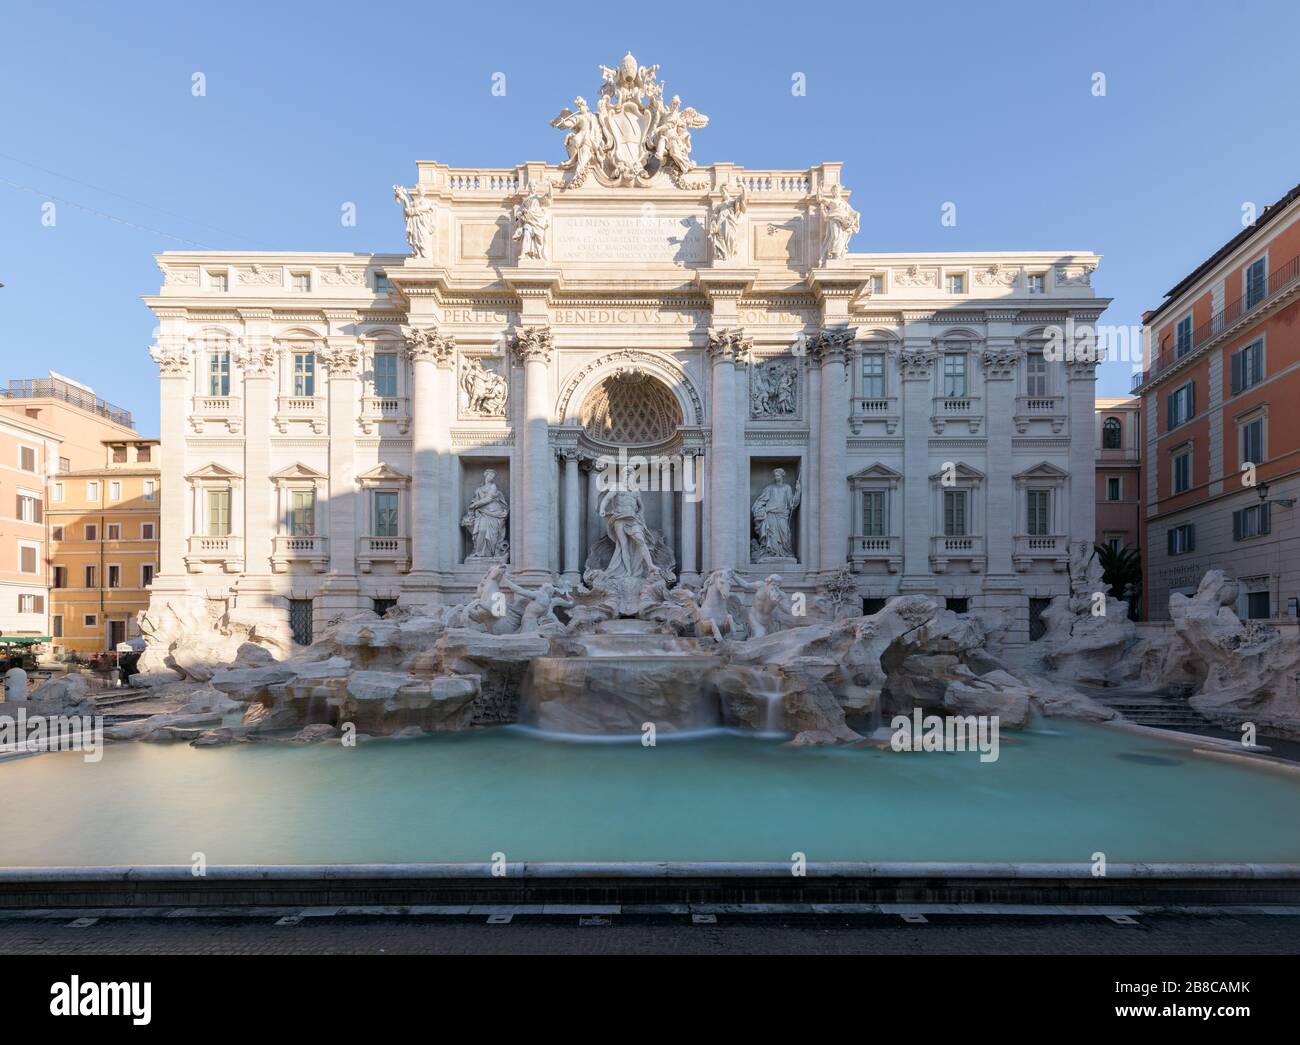 Longue exposition de la façade et de la piscine de la fontaine de Trevi, avec eau courante floue et pas de personnes visibles, à Rome, en Italie Banque D'Images